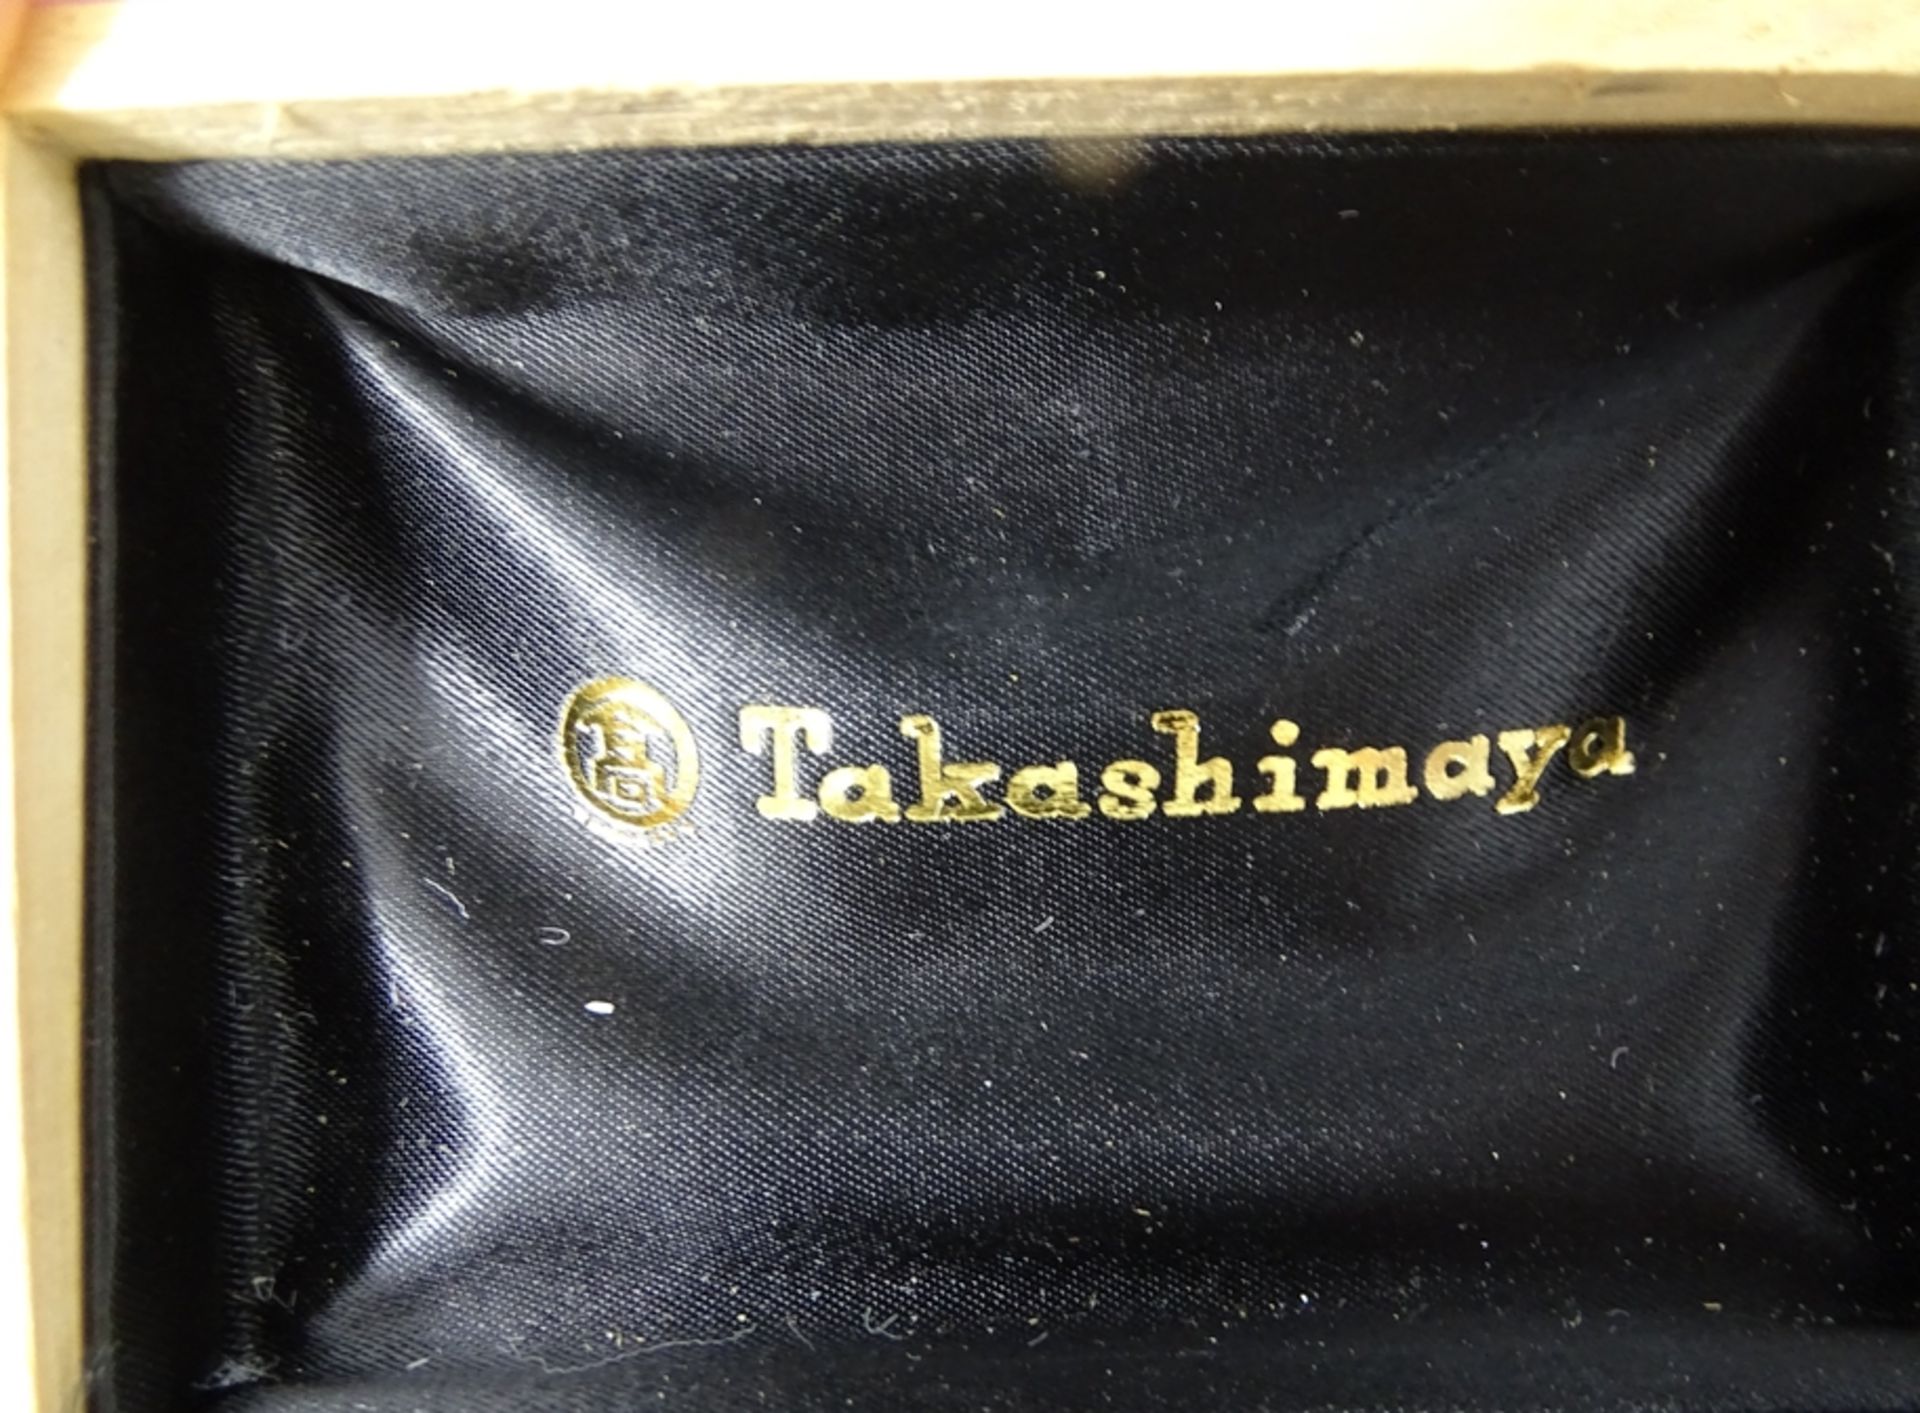 Manchettenknöpfe "Takashimaya" mit Kragenknopf, versilbert in Kasten - Bild 4 aus 4